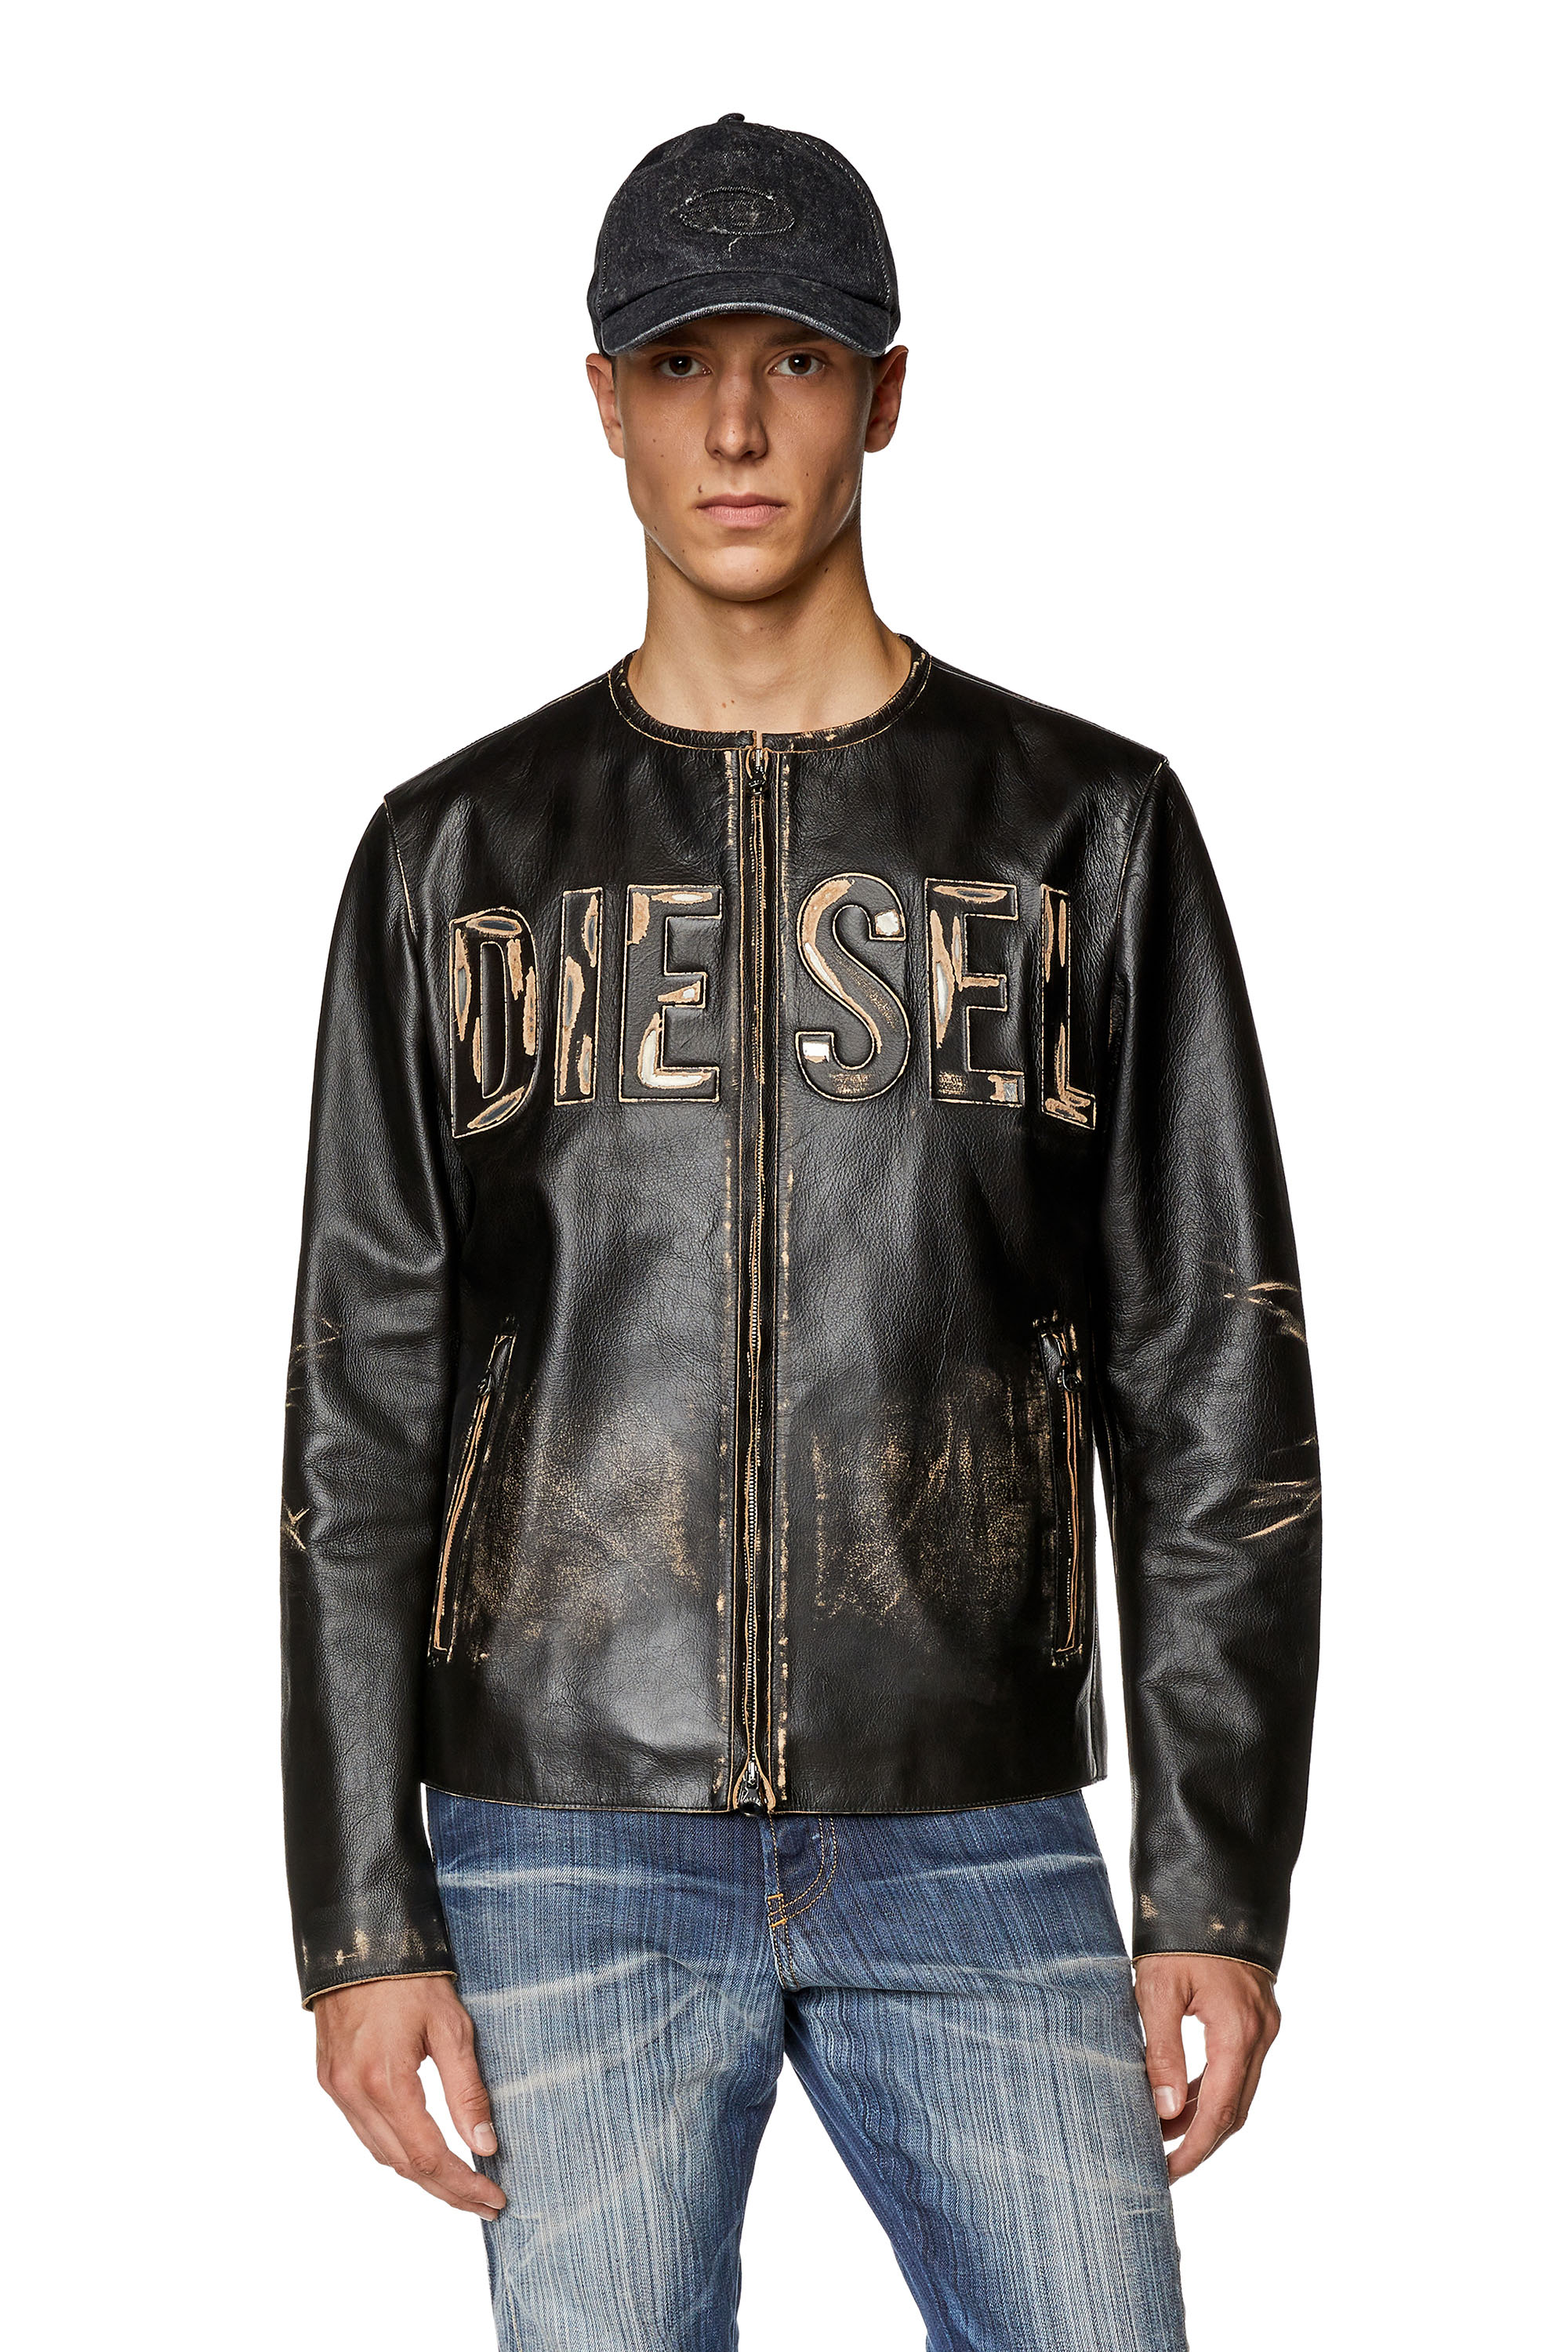 Diesel - Veste en cuir effet vieilli avec logo en métal - Vestes de cuir - Homme - Noir